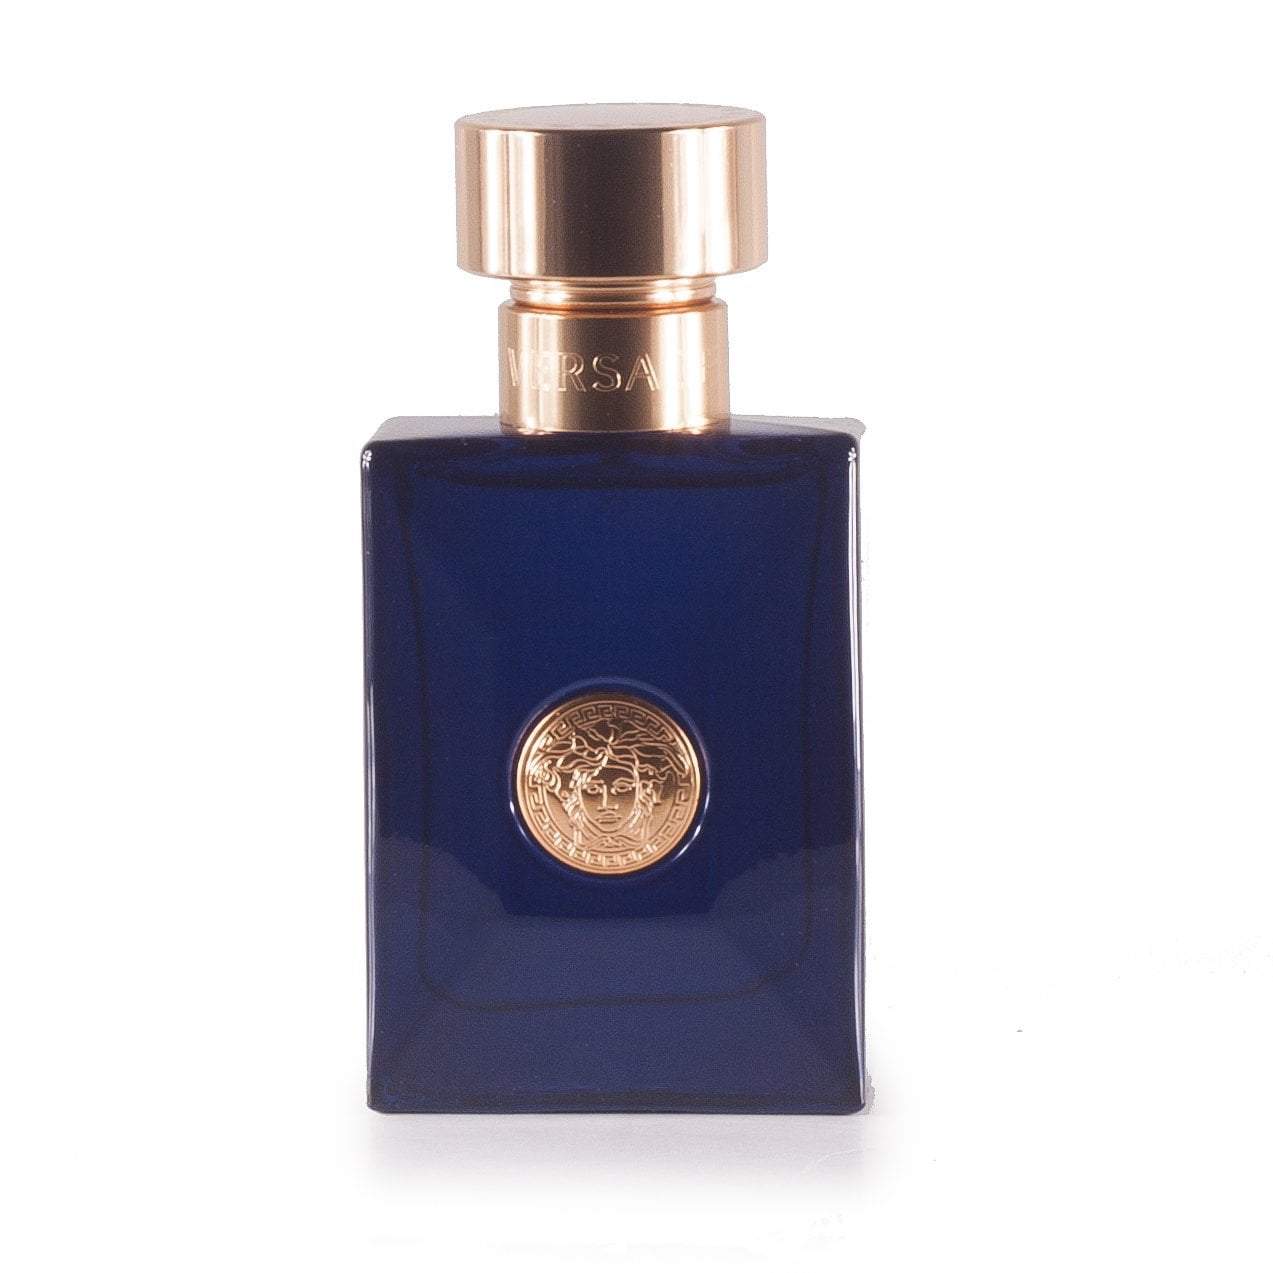 Dylan Blue Eau de Toilette Spray for Men by Versace, Product image 5